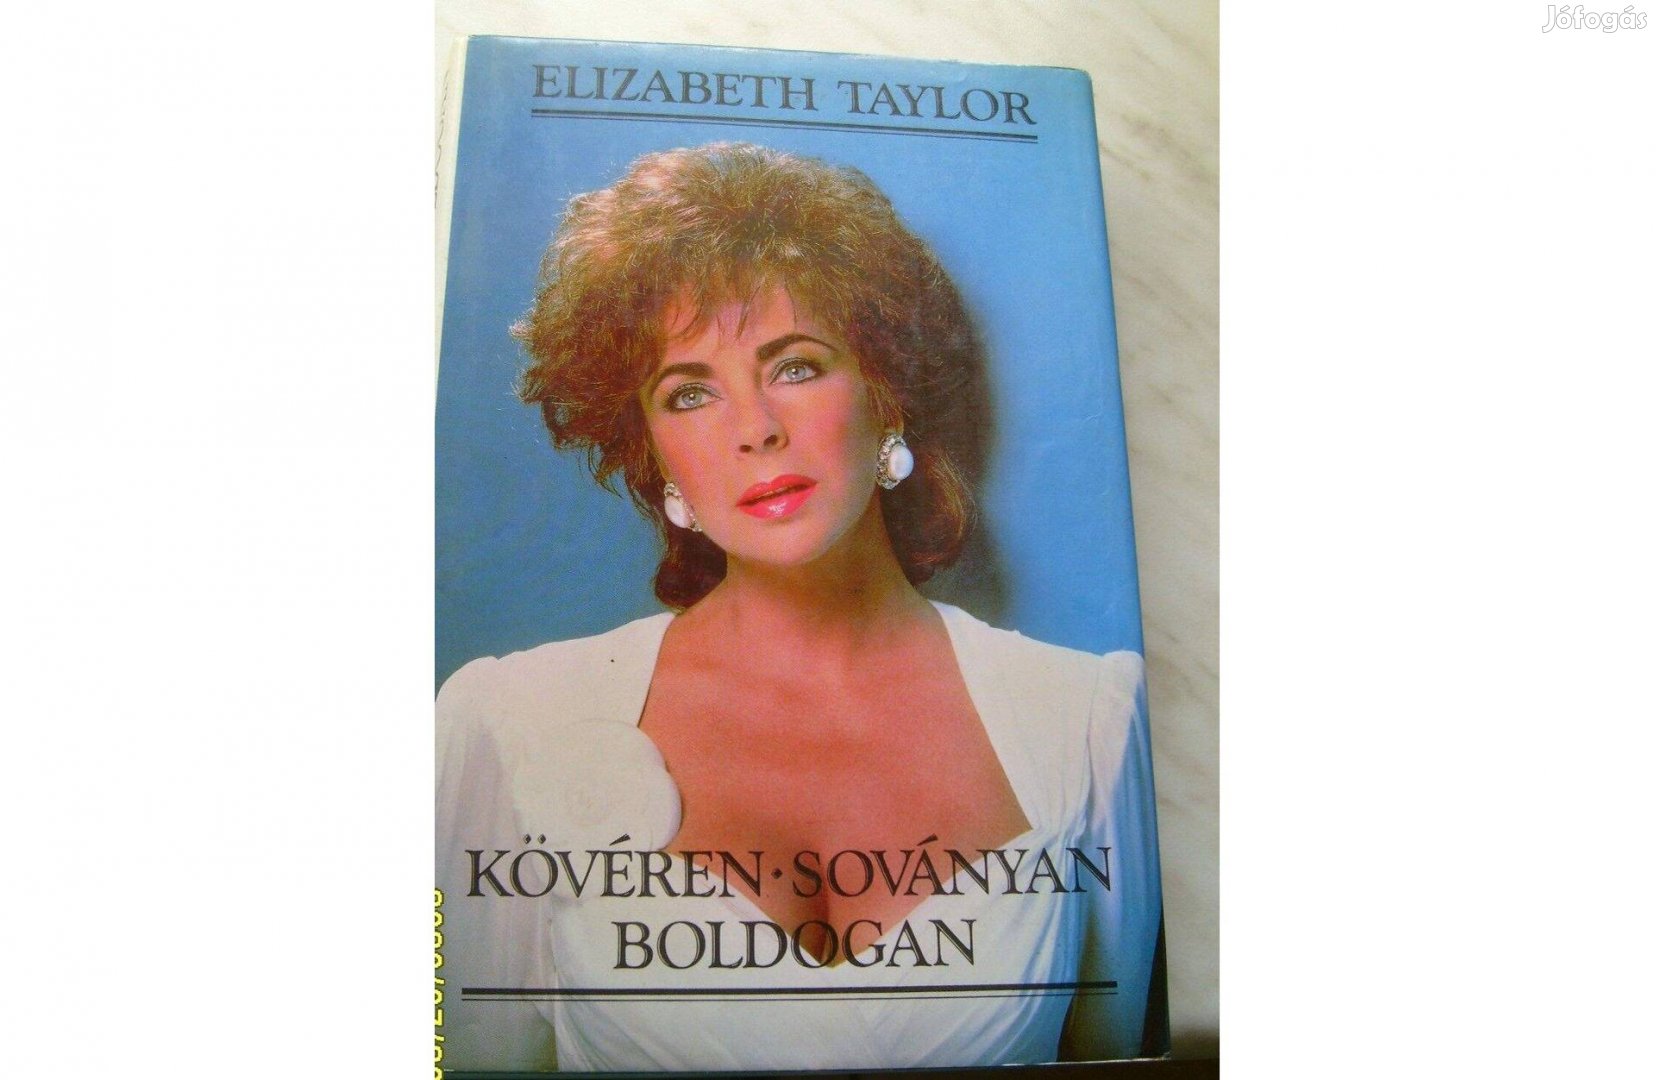 Elizabeth Taylor - Kövéren-soványan boldogan c. könyv